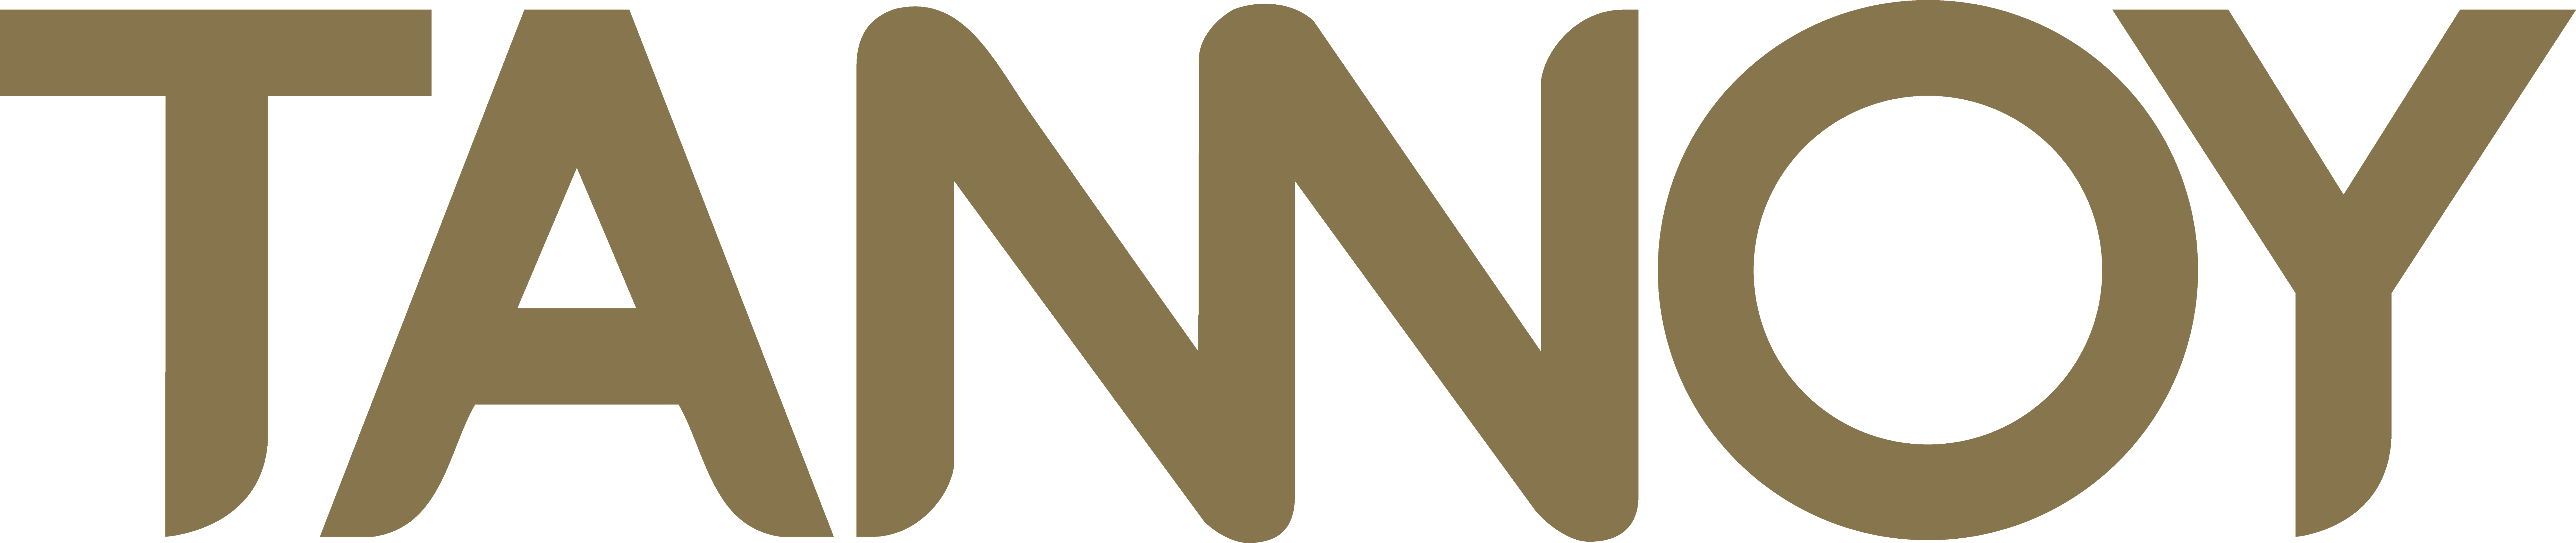 Tannoy logo.png